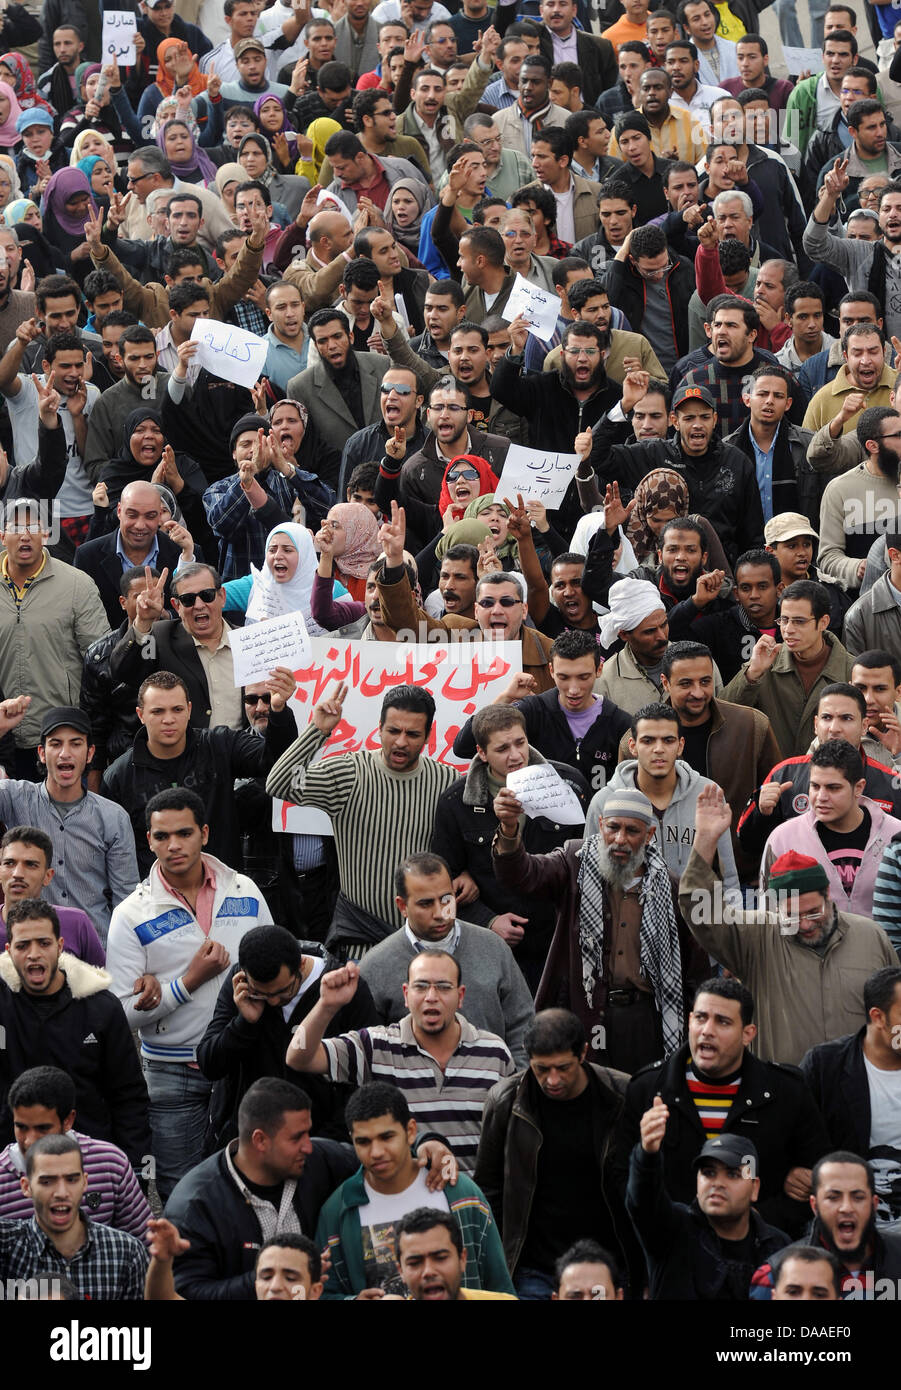 Assemblare i manifestanti al Cairo, Egitto, 29 gennaio 2011. Scontri e saccheggi nella capitale egiziana continua il sabato mattina. Secondo i resoconti dei mass media, decine di morti e molti feriti. Foto: Annibale Foto Stock